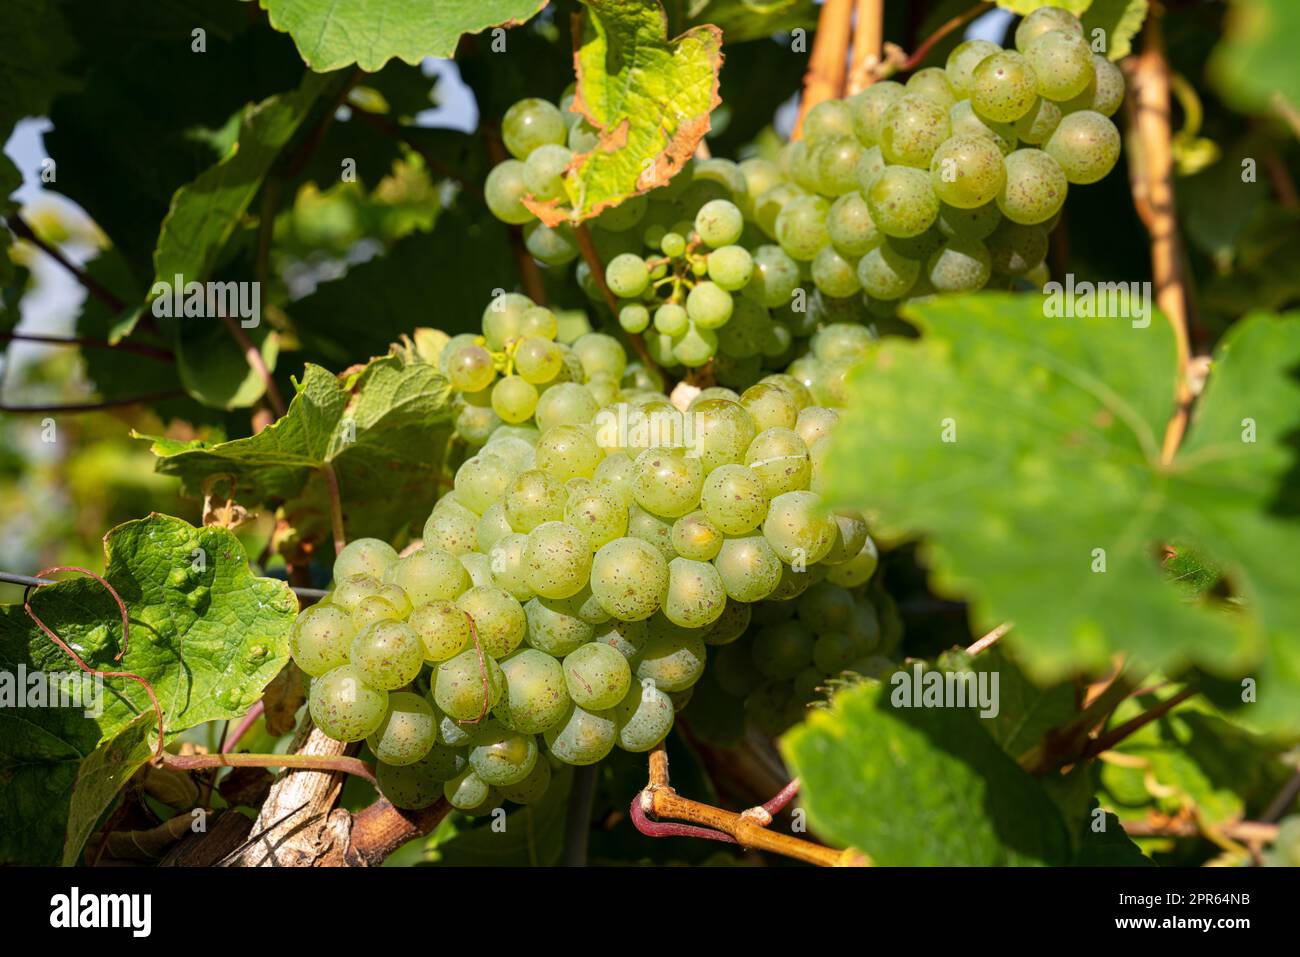 Common grape vine, Vitis vinifera Stock Photo